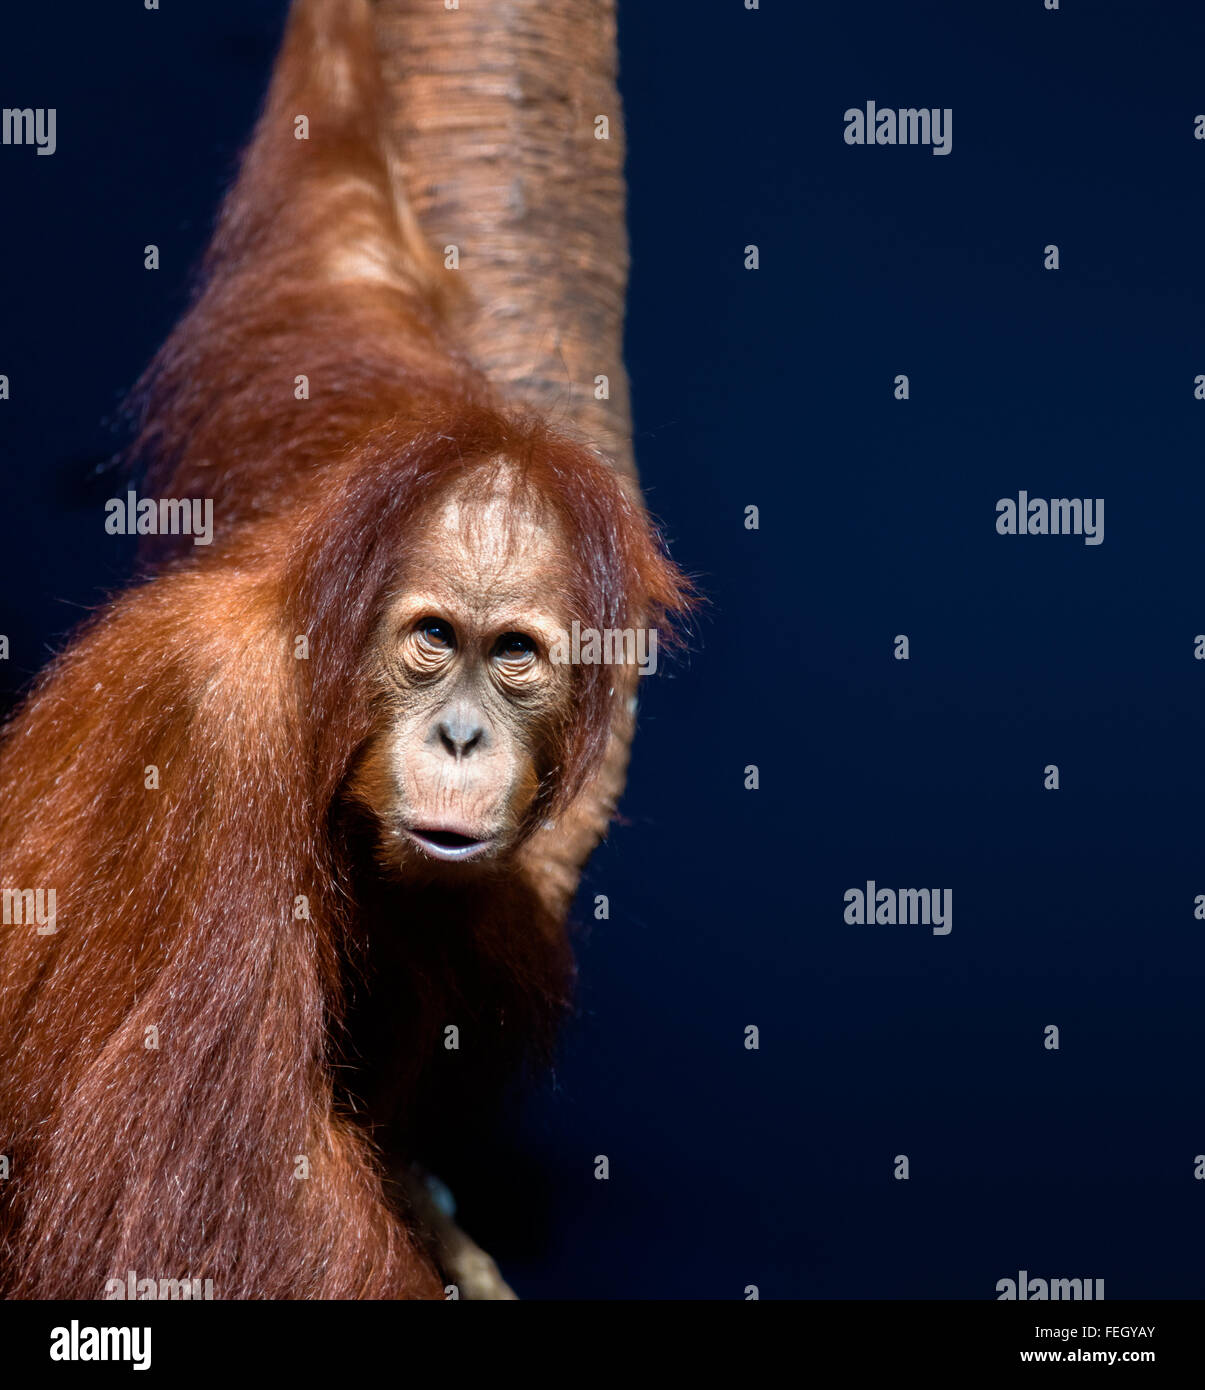 Tiere: junge Orang-Utan, Portrait auf dunkelblauem Hintergrund Stockfoto